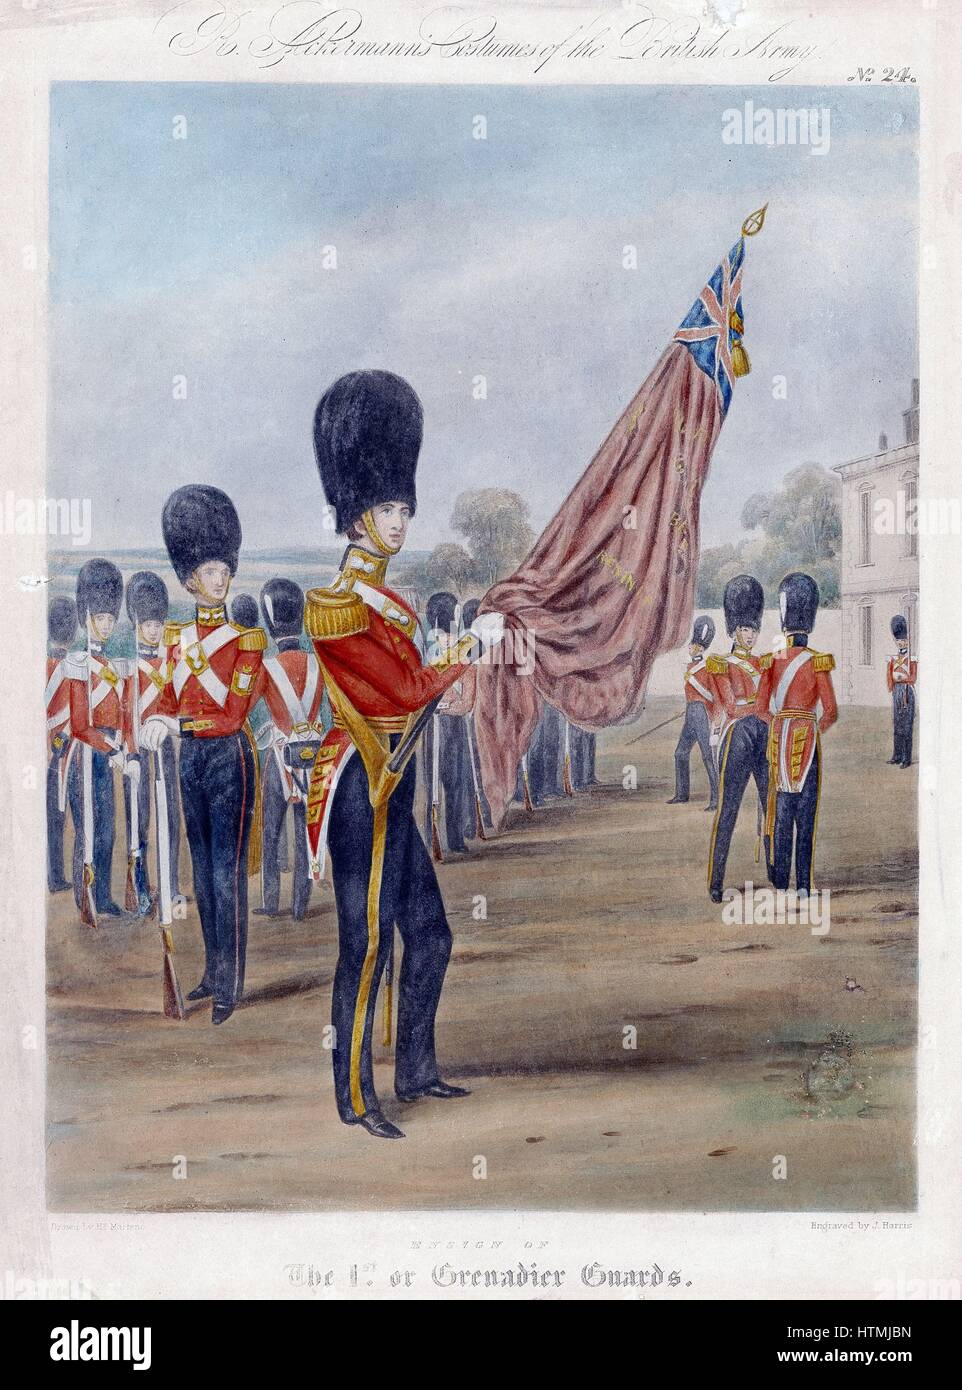 Alfiere del granatiere guardie. Nota "granate' sui collari e cinghie. Da R. Ackermann 'costumi dell'Esercito britannico", 1844. Litografia Foto Stock